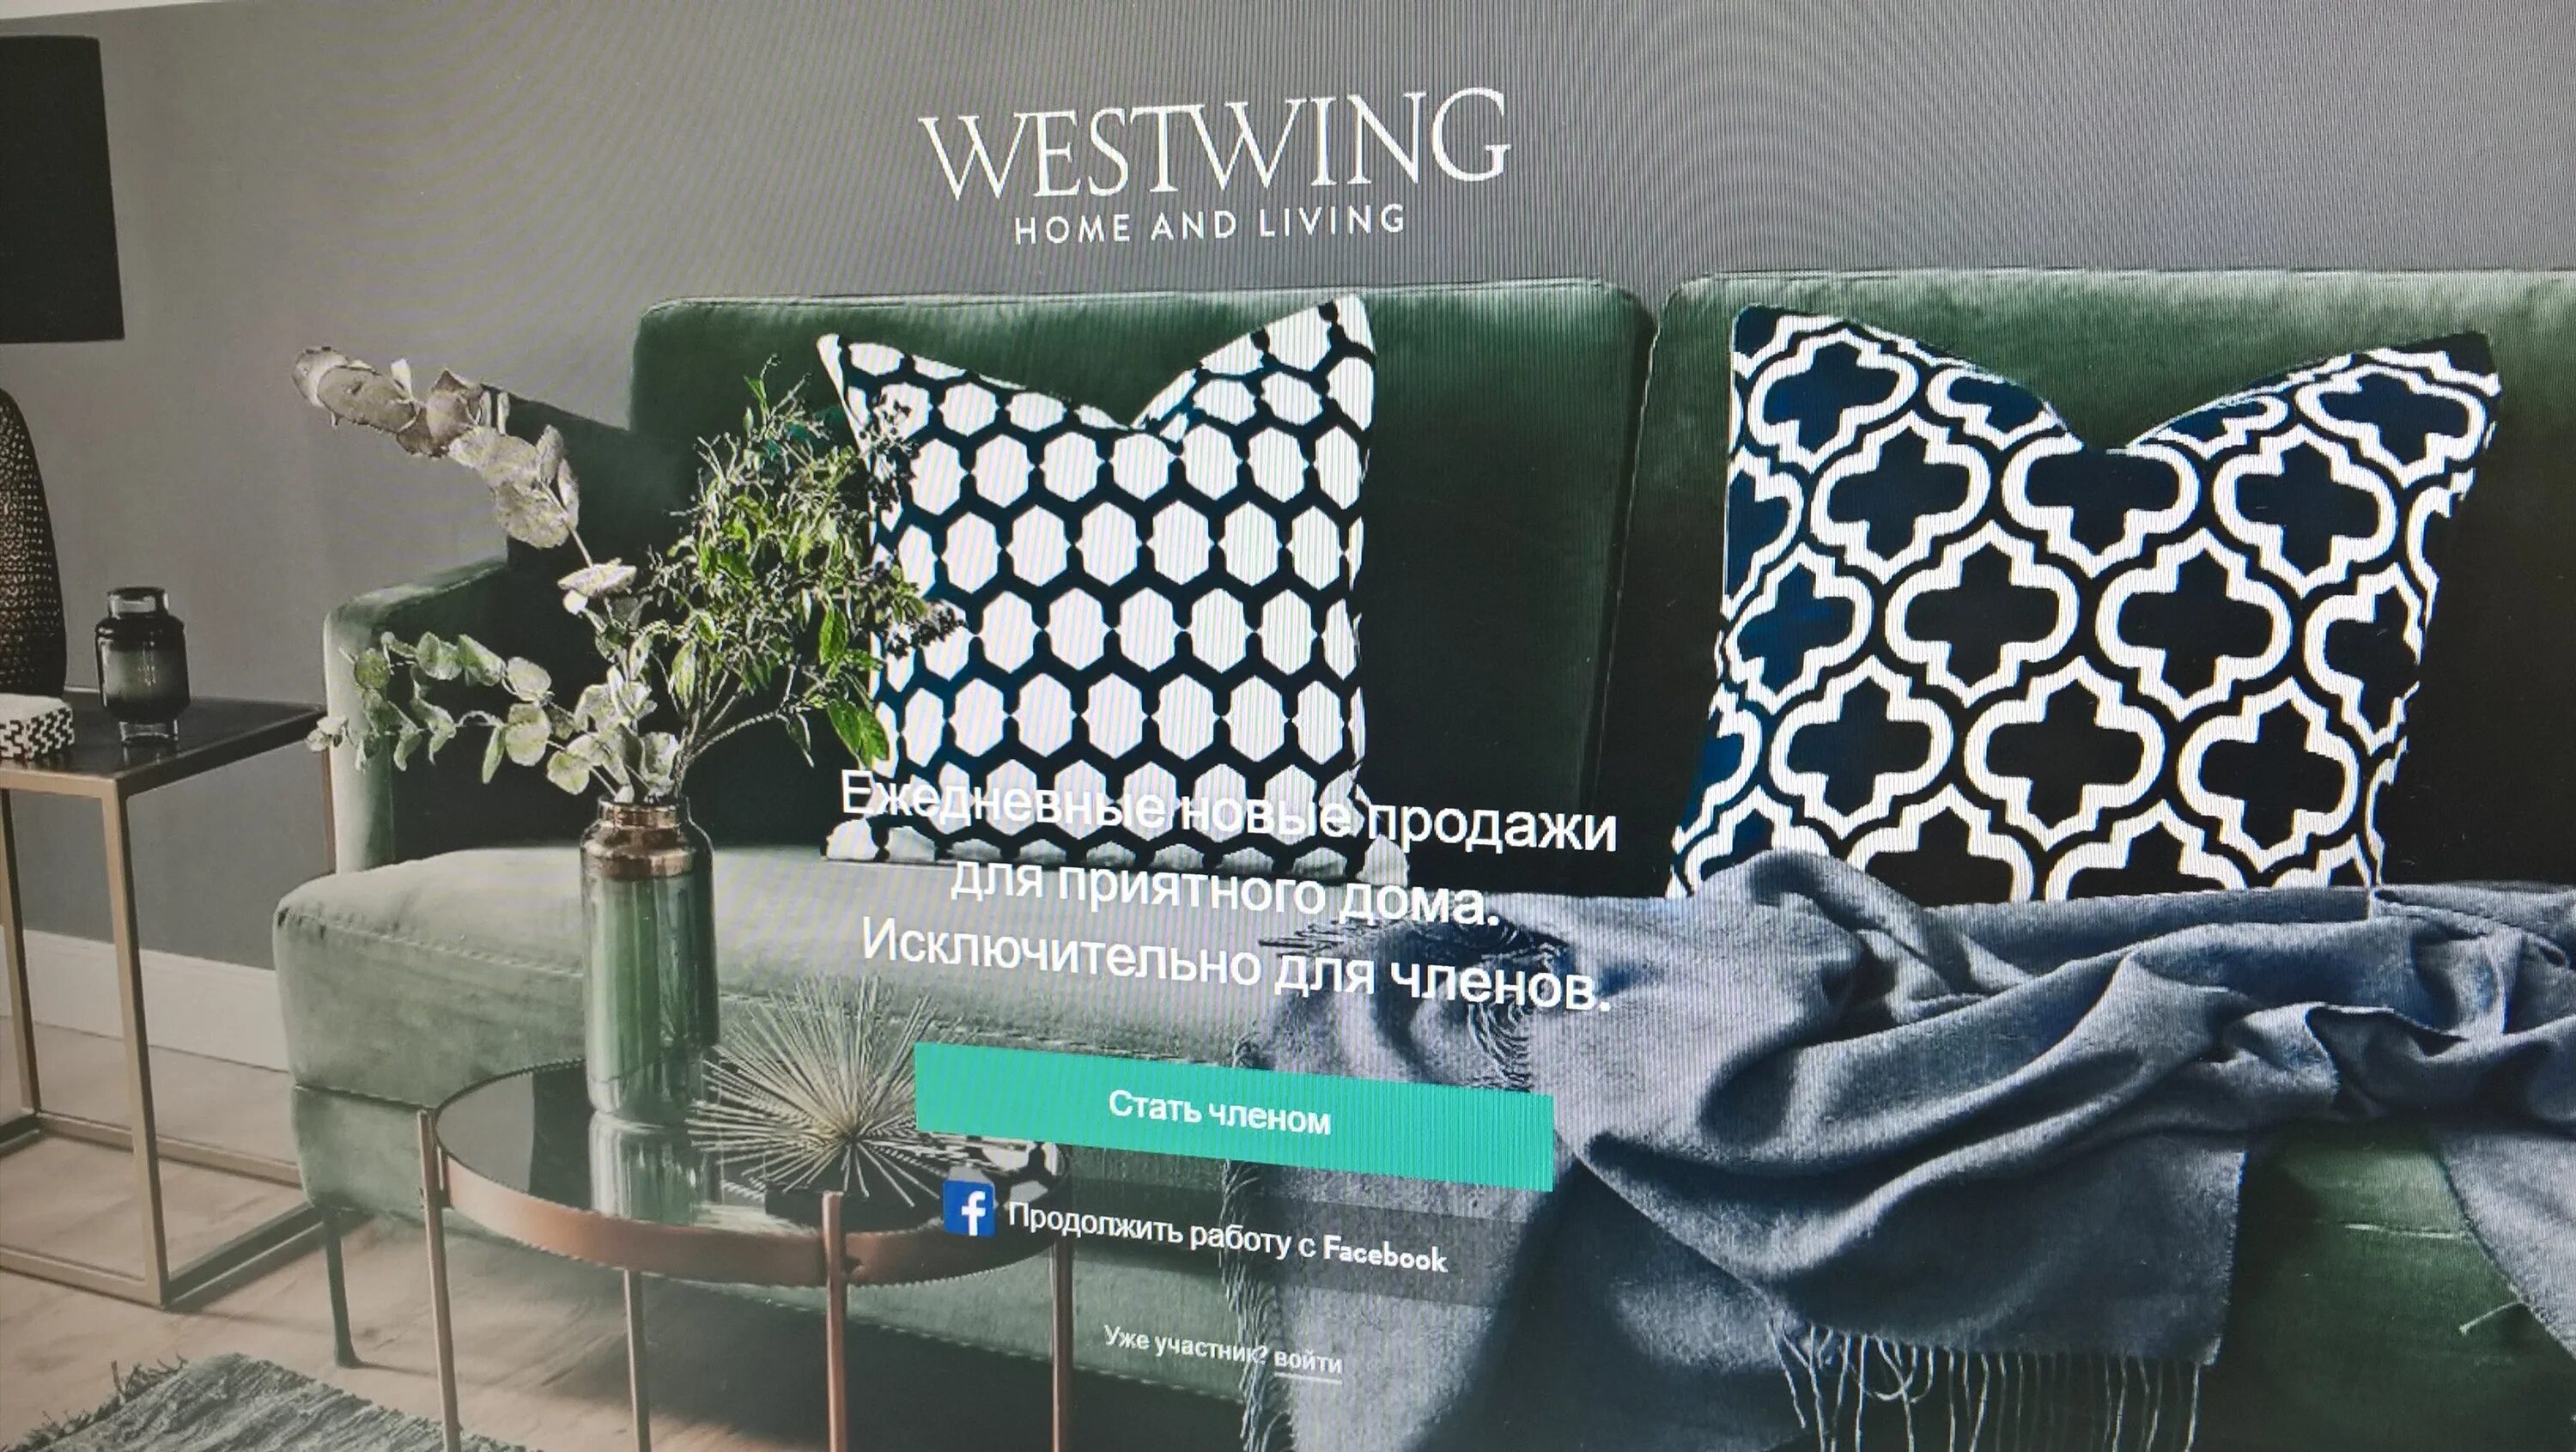 Вествинг интернет. Westwing интернет магазин. Westwing Home and Living генеральный директор. Магазин вестинг интерьер интернет каталог.